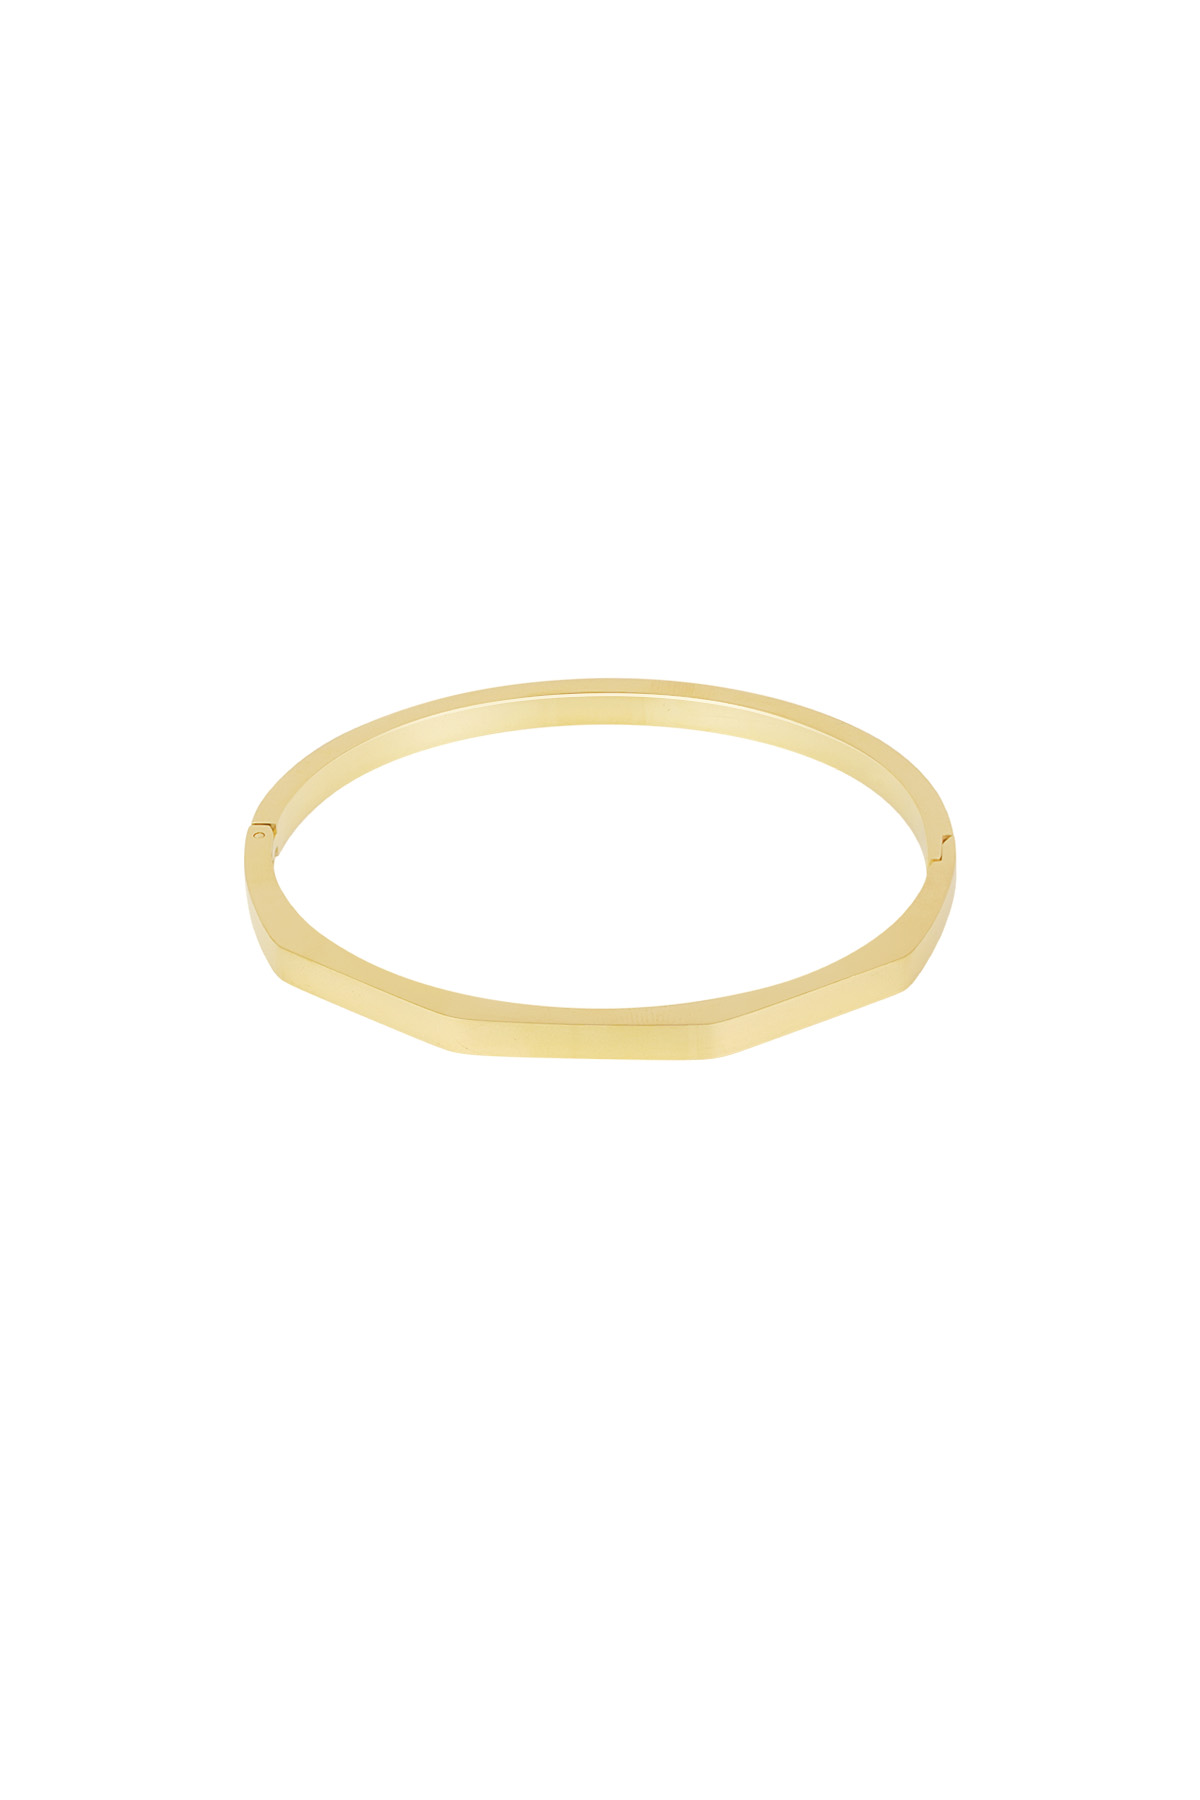 Shaped slave bracelet - gold  h5 